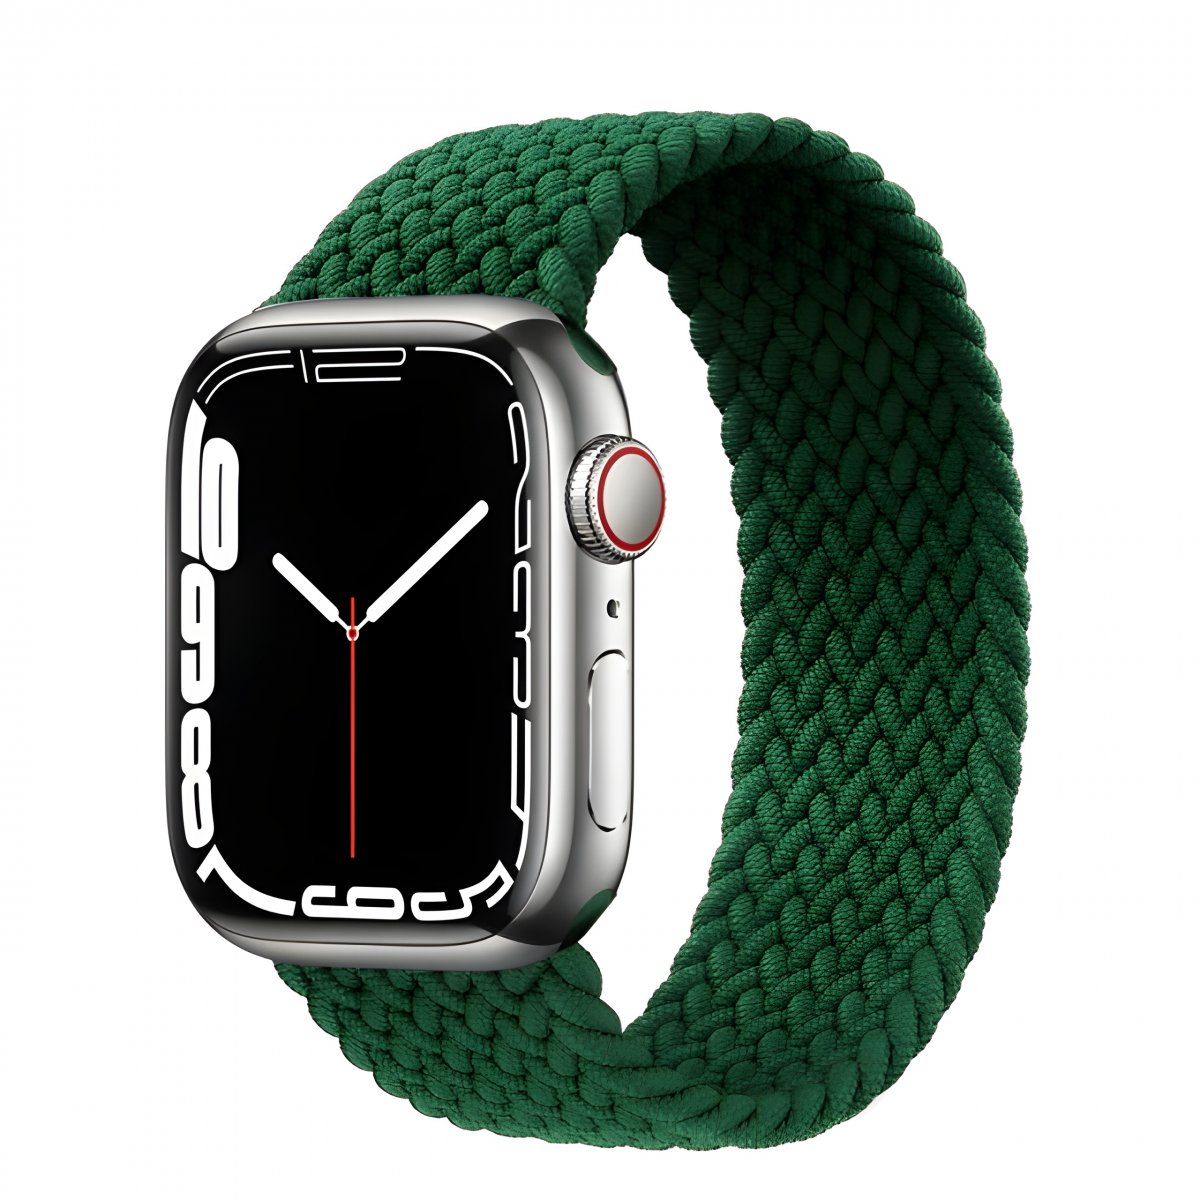 Řemínek iMore Braided Solo Loop Apple Watch Series 1/2/3 38mm - inkoustově zelená (L)